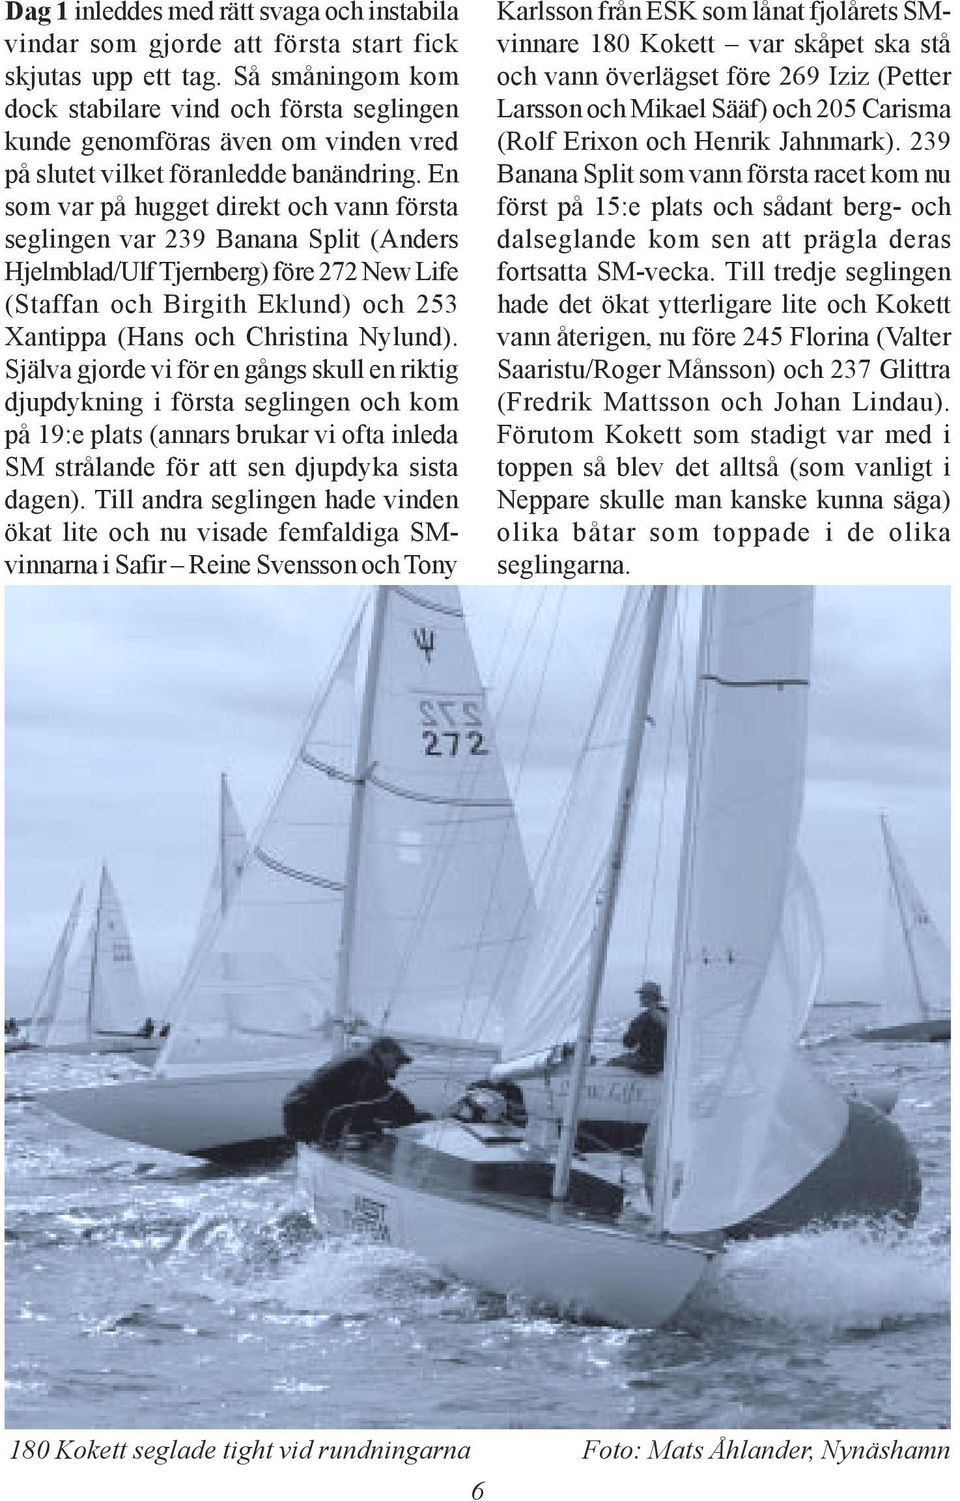 En som var på hugget direkt och vann första seglingen var 239 Banana Split (Anders Hjelmblad/Ulf Tjernberg) före 272 New Life (Staffan och Birgith Eklund) och 253 Xantippa (Hans och Christina Nylund).